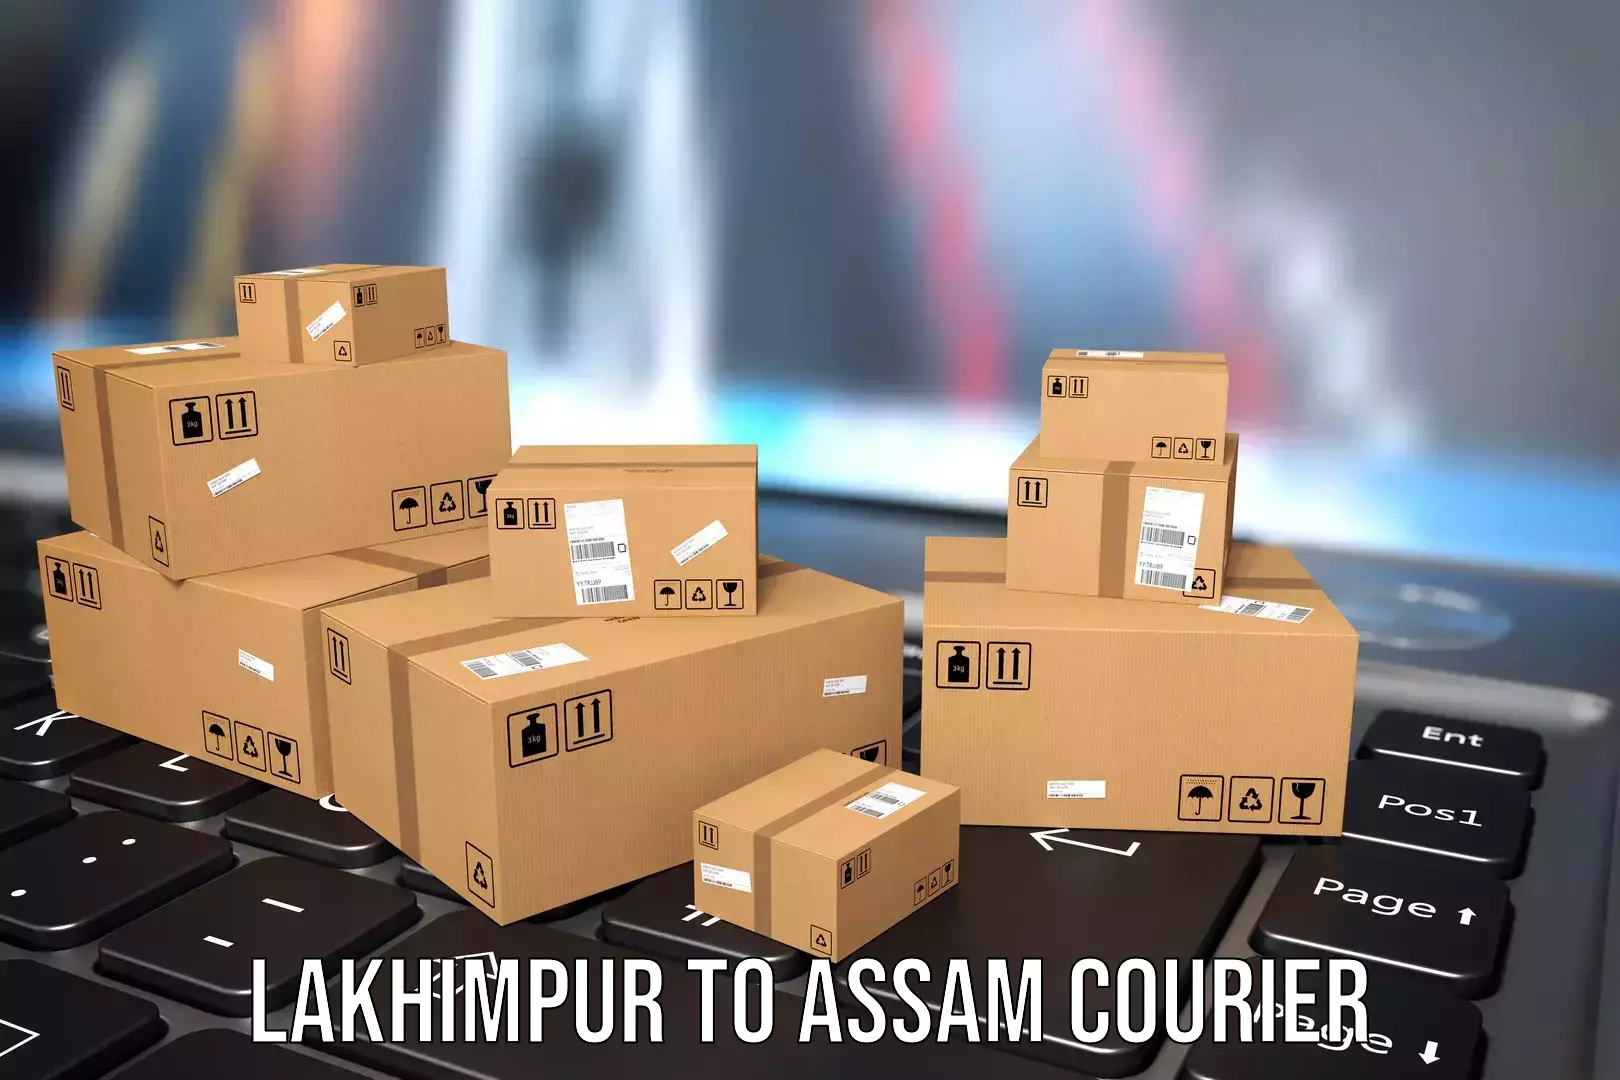 Baggage shipping experience in Lakhimpur to Guwahati University